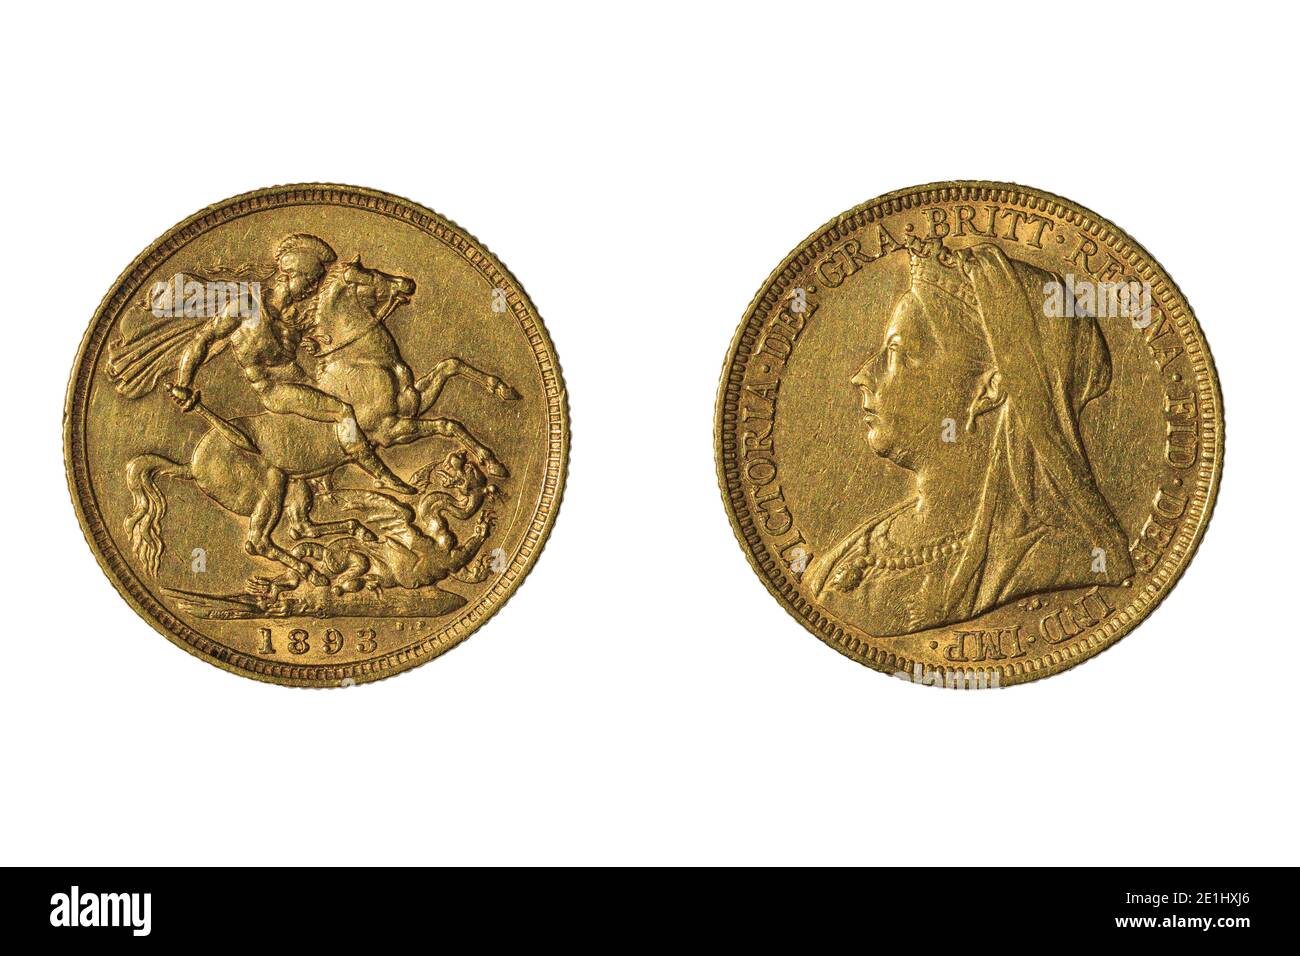 Une pièce semi-souveraine d'or de la Grande-Bretagne 1893, avec la reine Victoria et Saint George qui lavent le dragon Banque D'Images